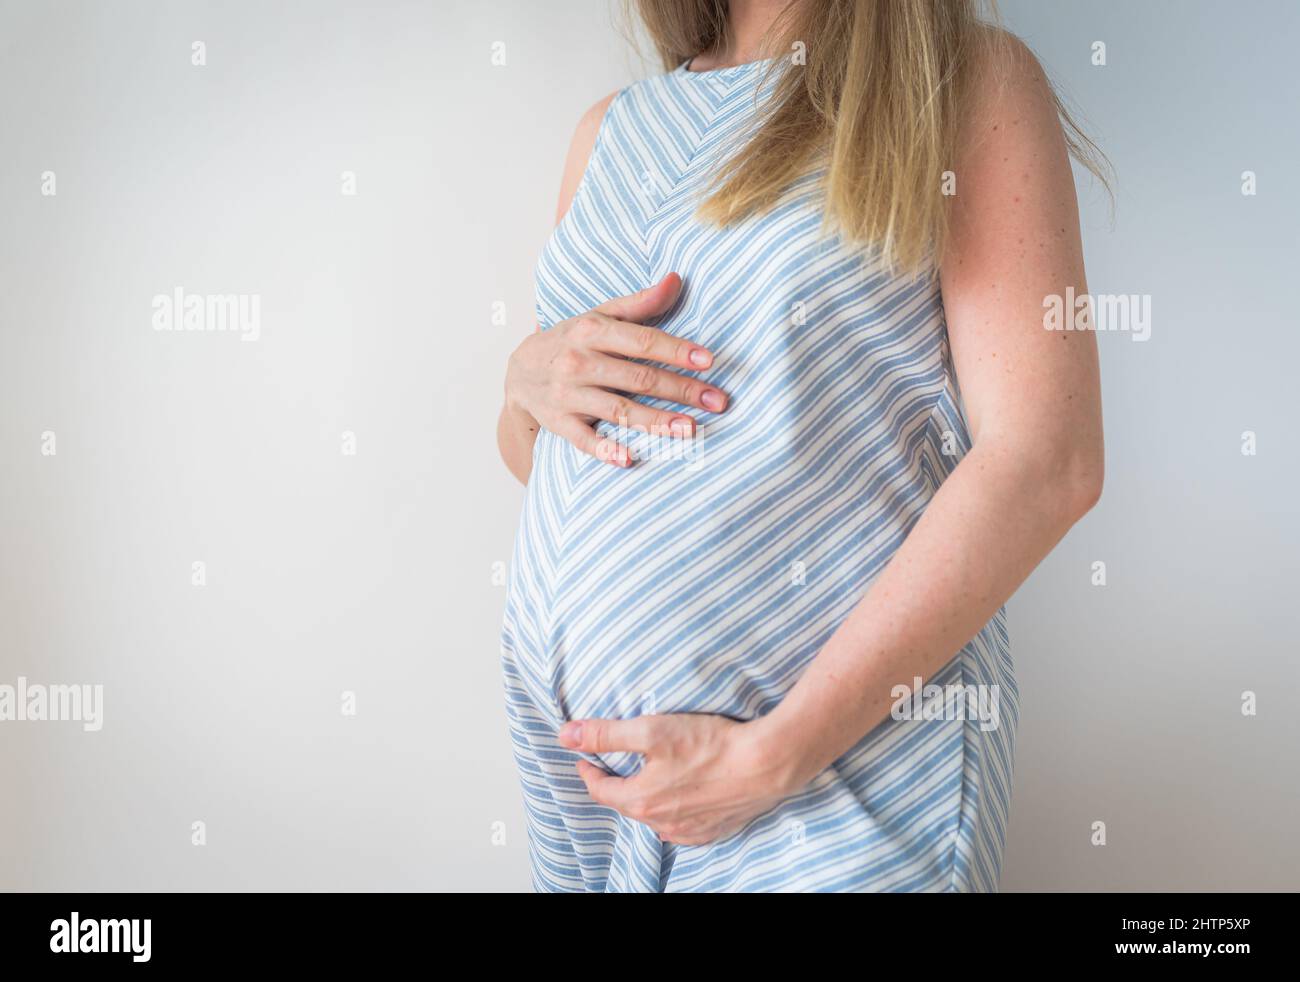 ventre donna incinta, tecnologia riproduttiva, speranza, concetto di vita nuova Foto Stock